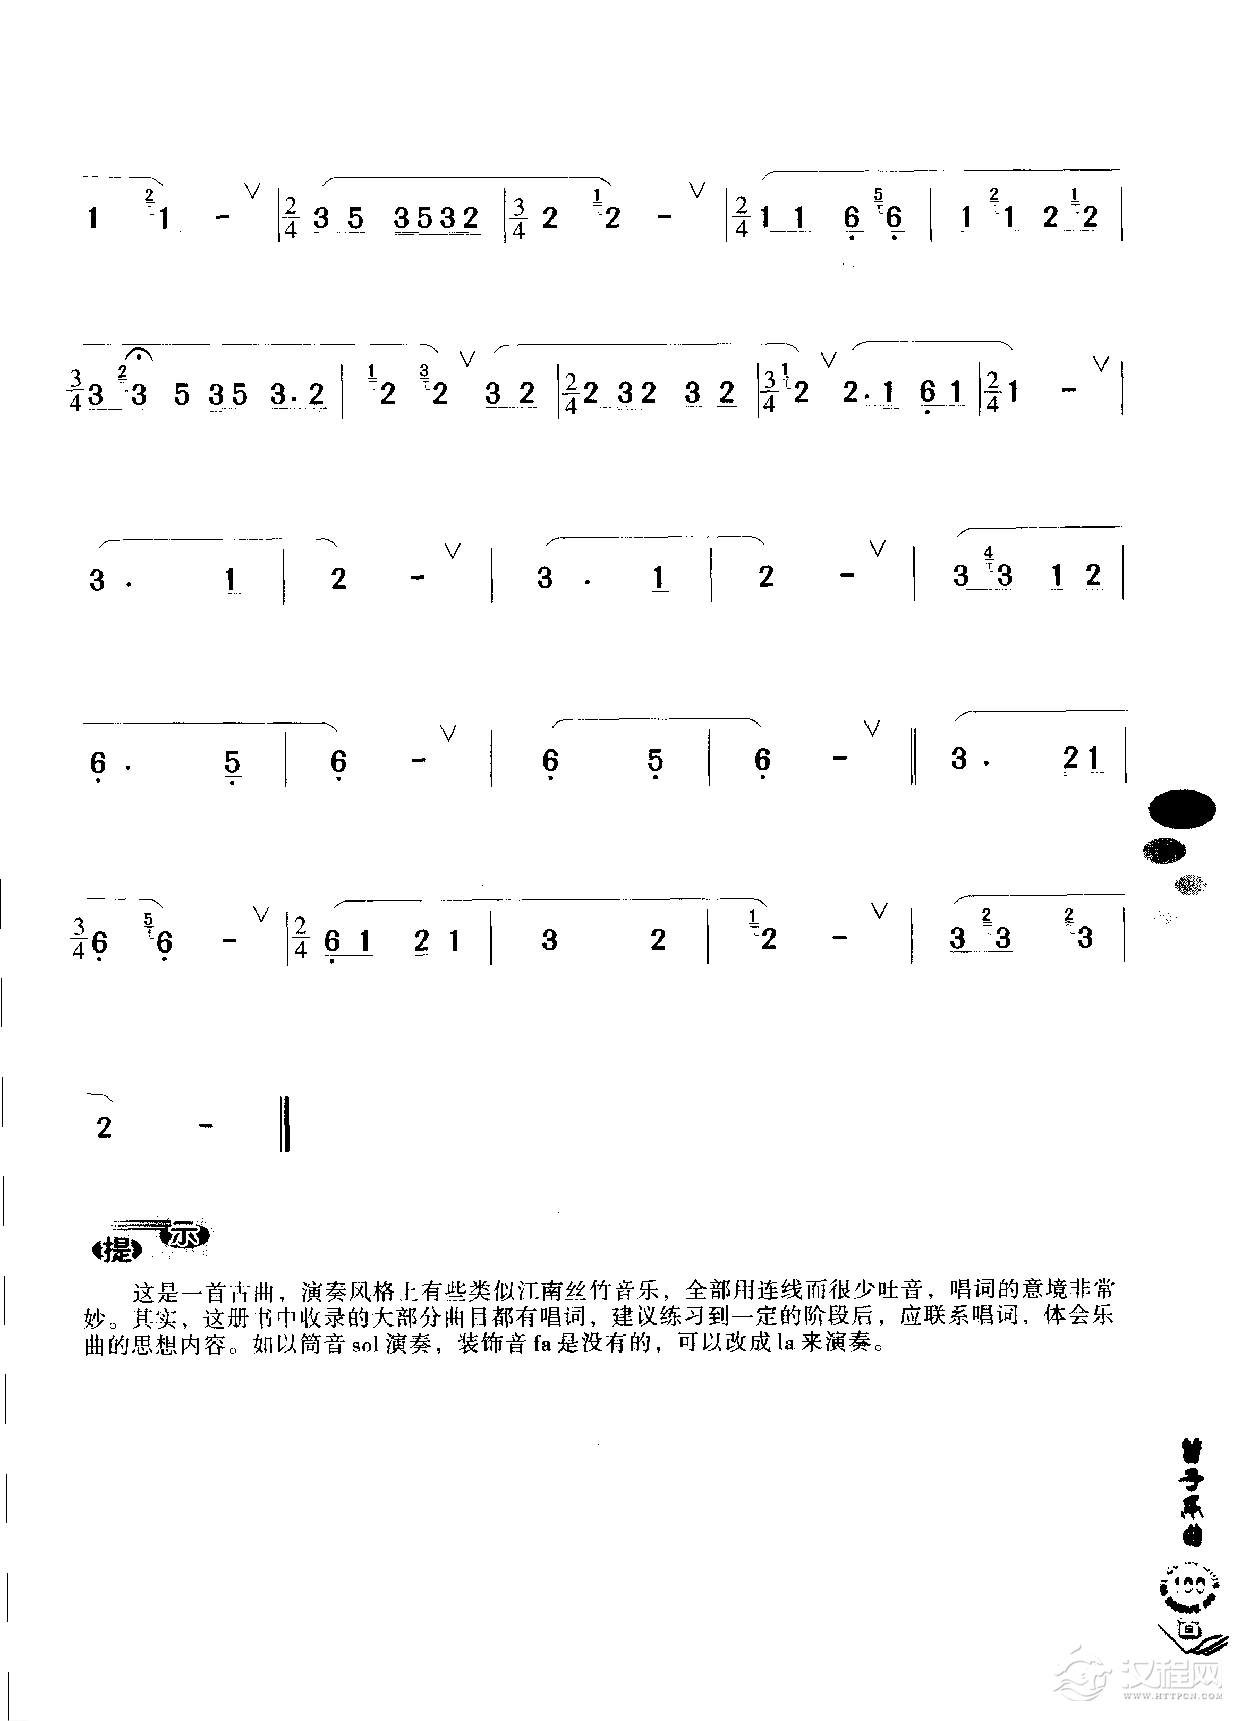 初级笛箫乐曲《阳关三叠》简单的竹笛曲